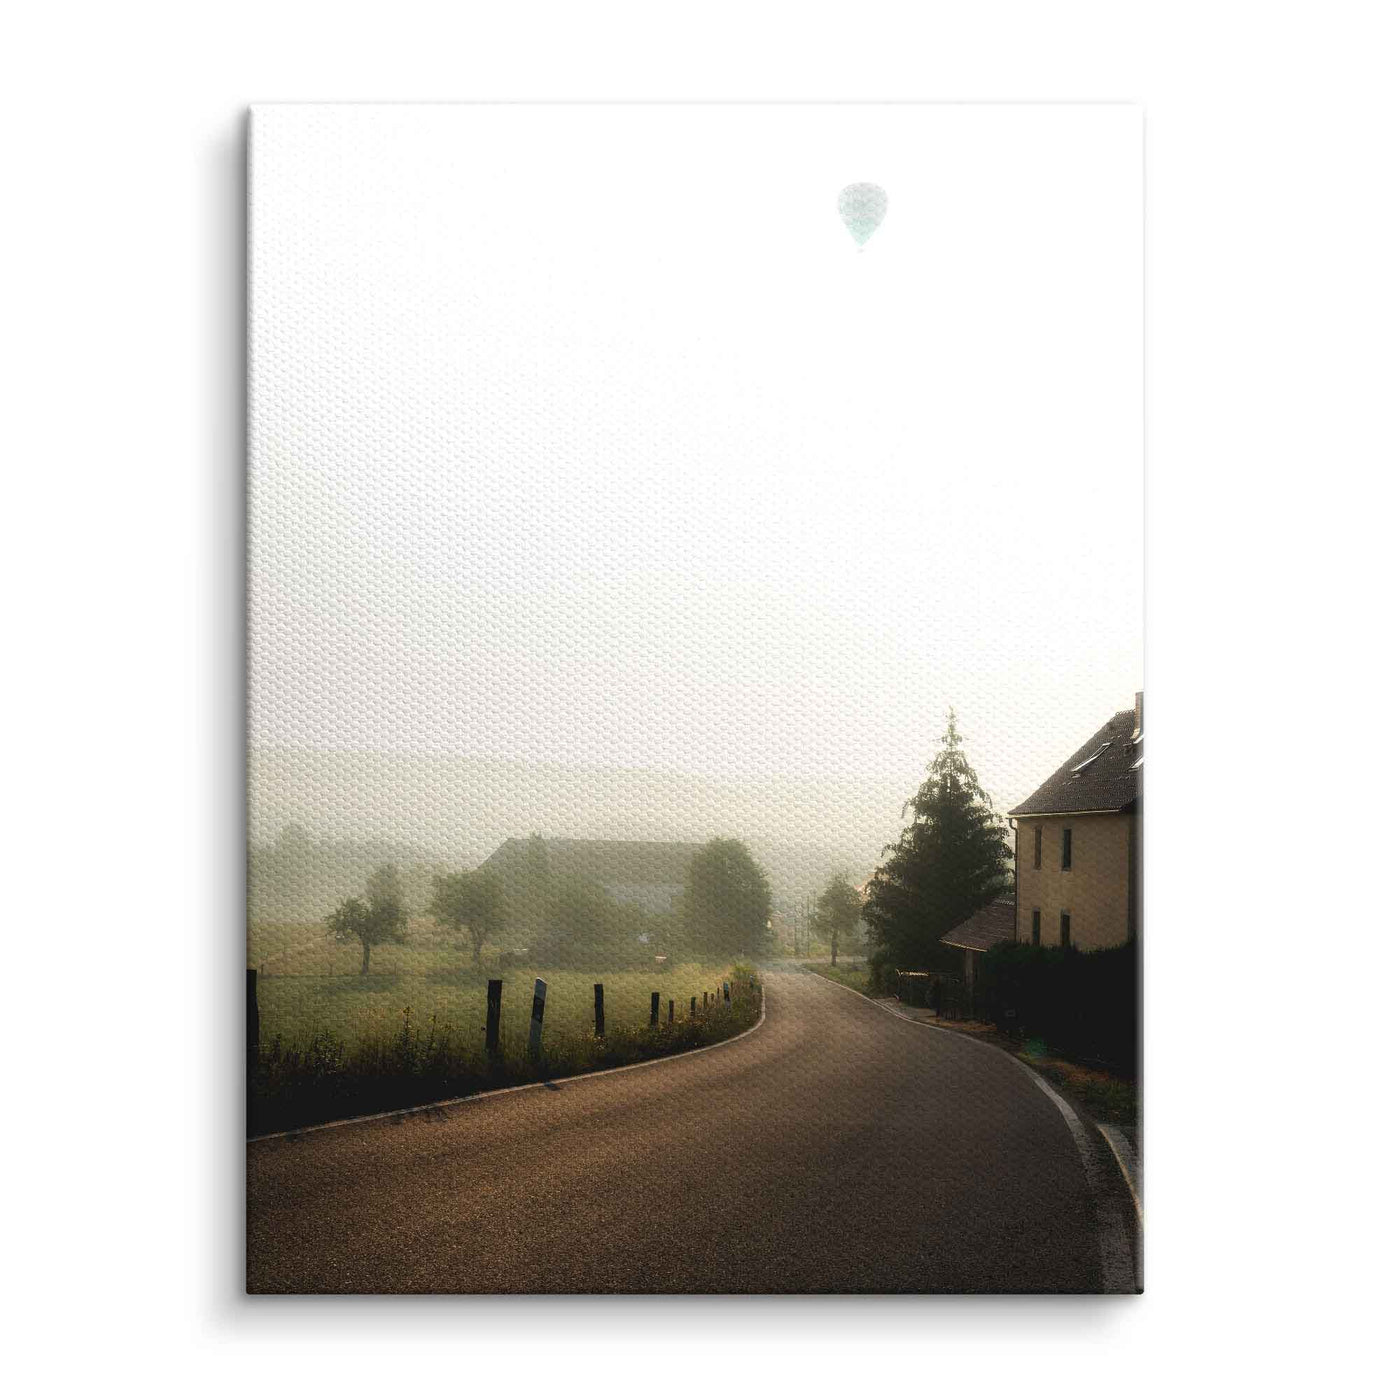 Hot air balloon in the fog